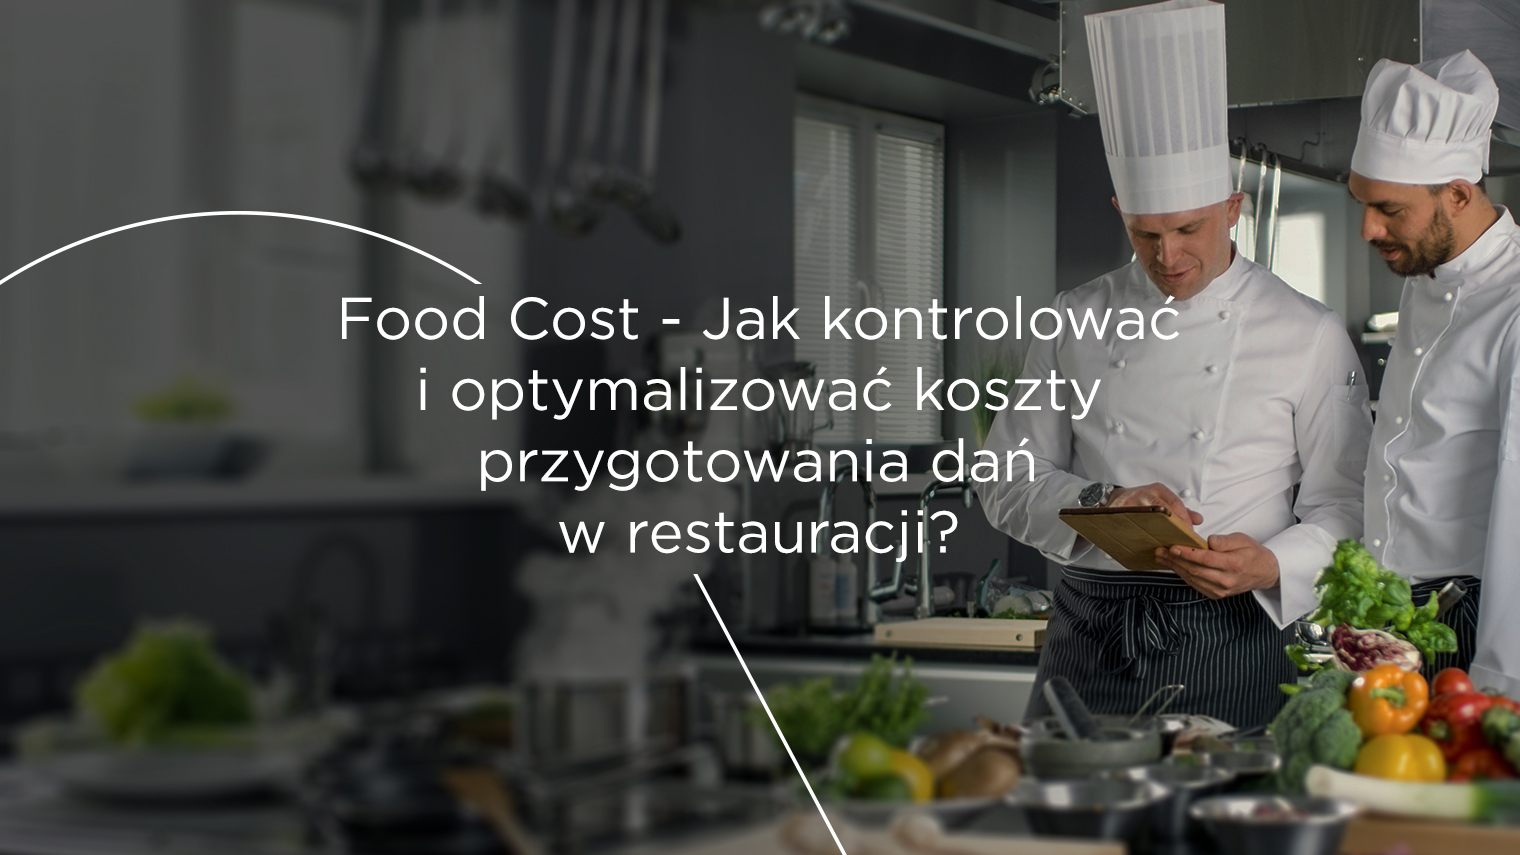 Food Cost: jak kontrolować koszty przygotowania dań?